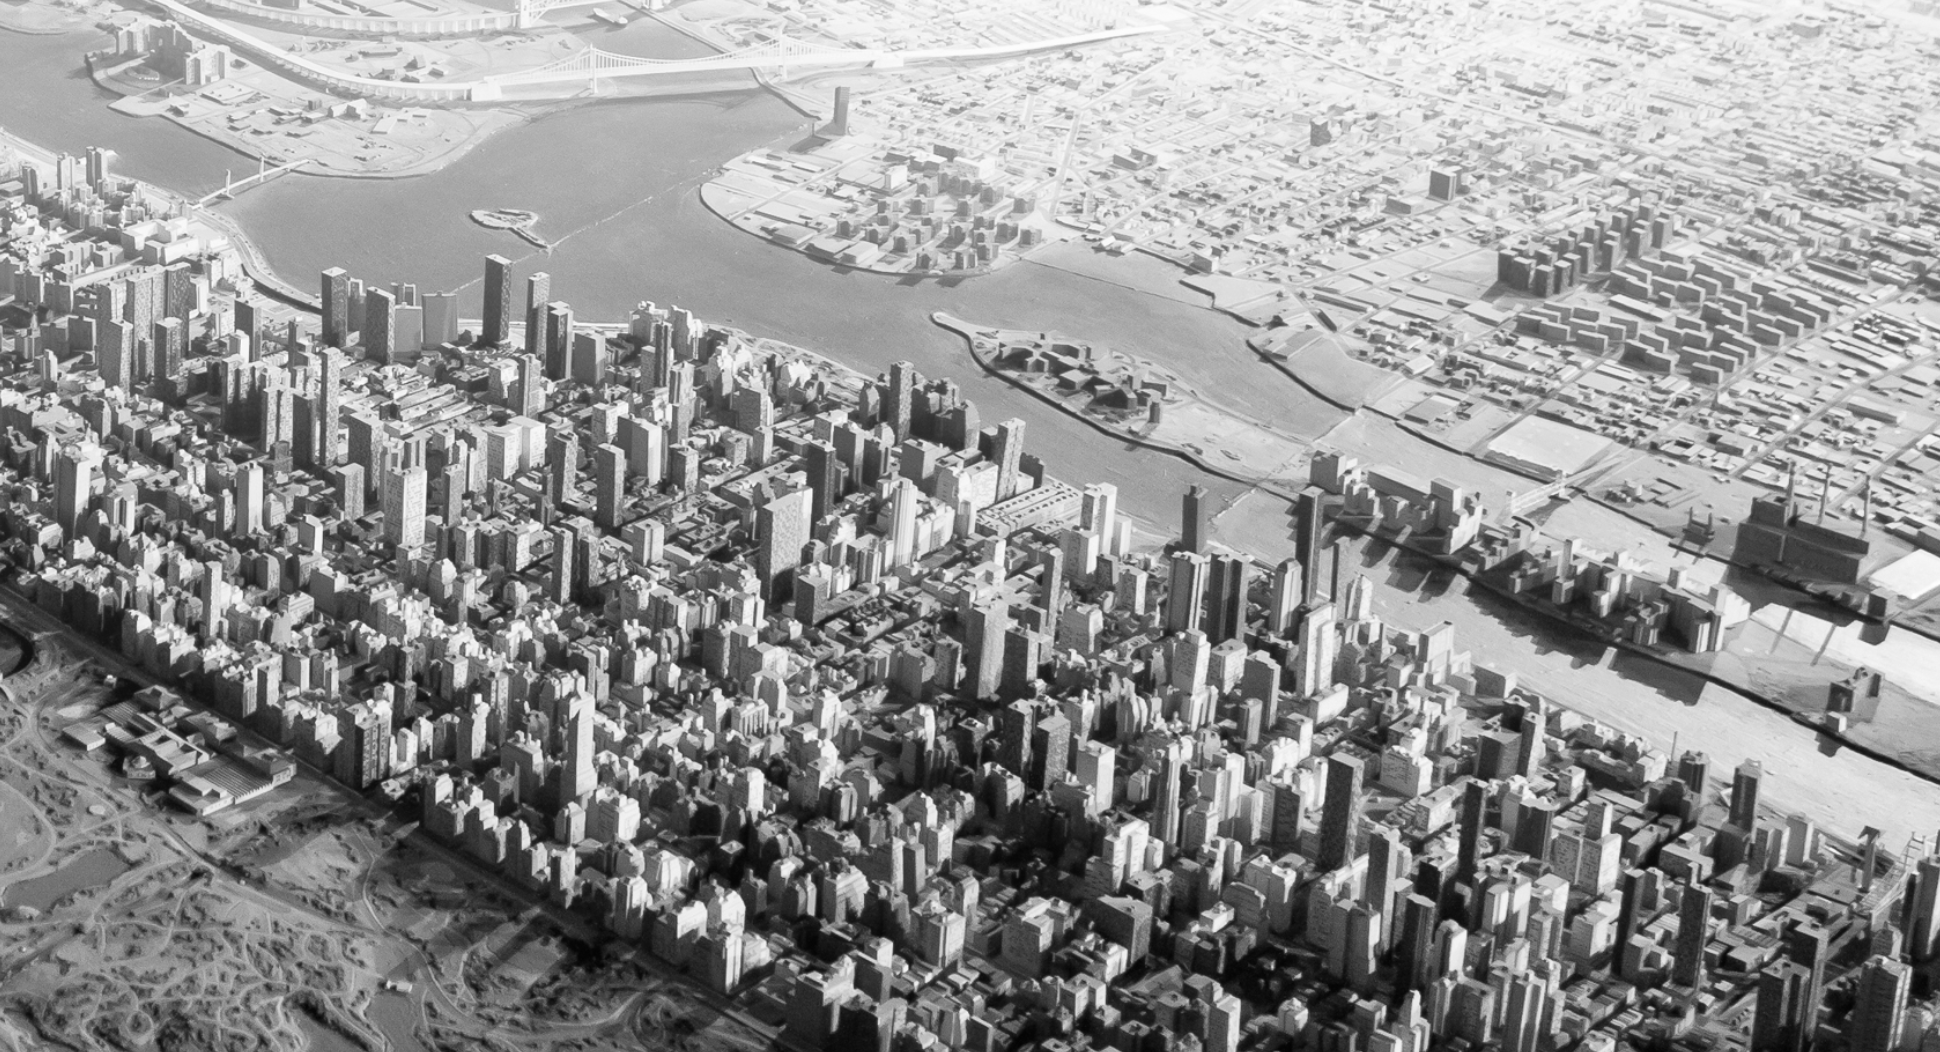 Aerial view of Manhattan skyline